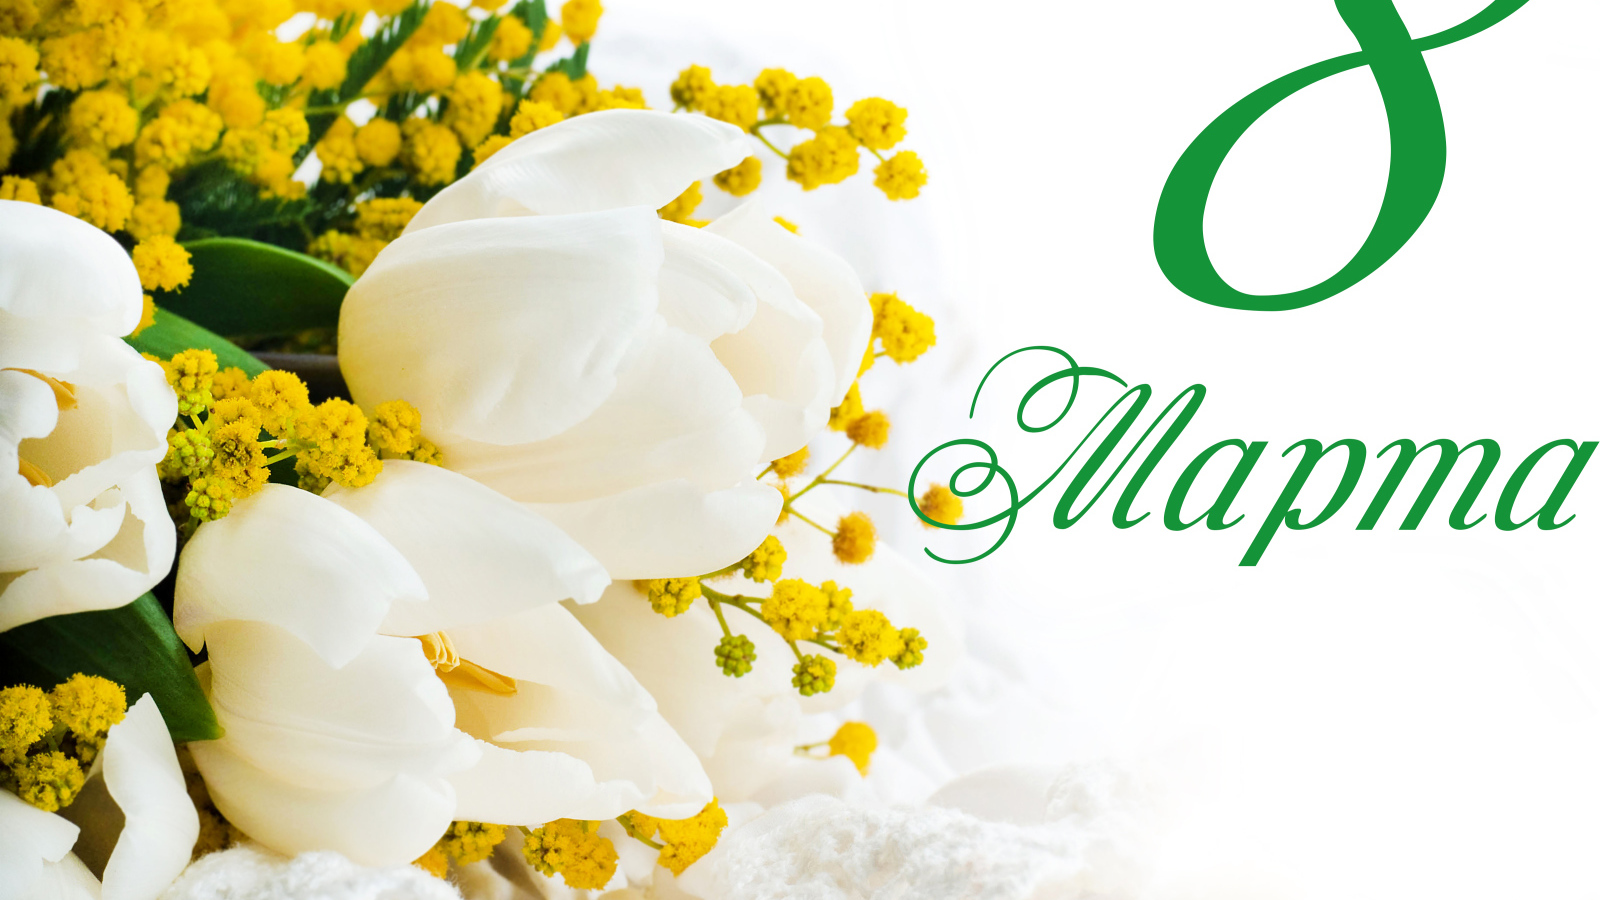 Белые тюльпаны и желтые цветы мимозы на белом фоне на Международный женский день 8 марта